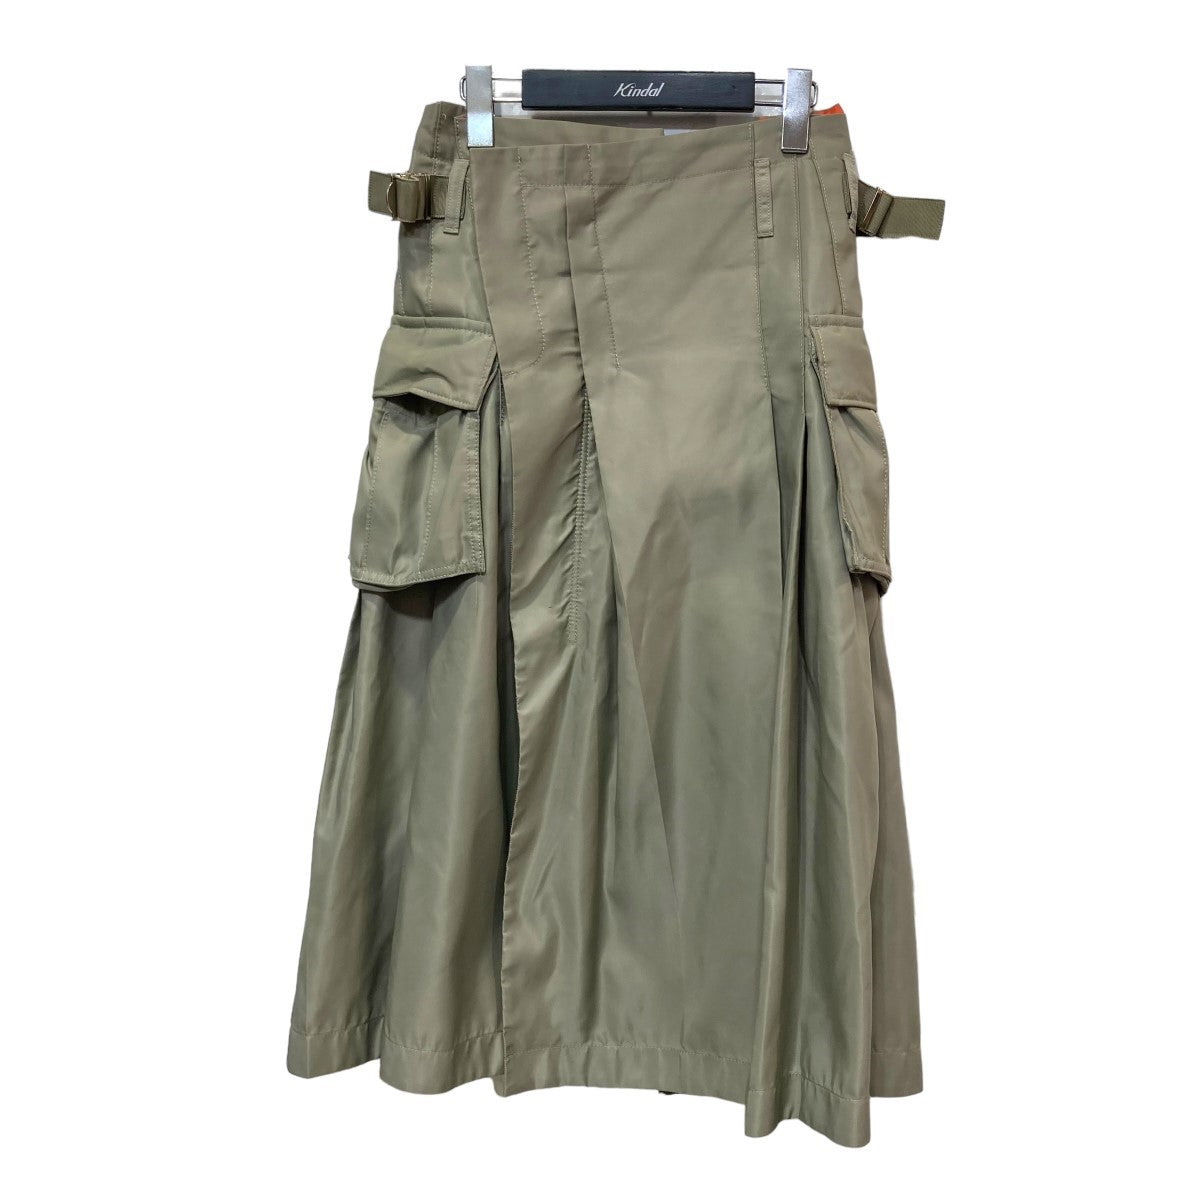 sacai(サカイ) 23-06808「Nylon Twill Skirt」ナイロンツイルスカート 